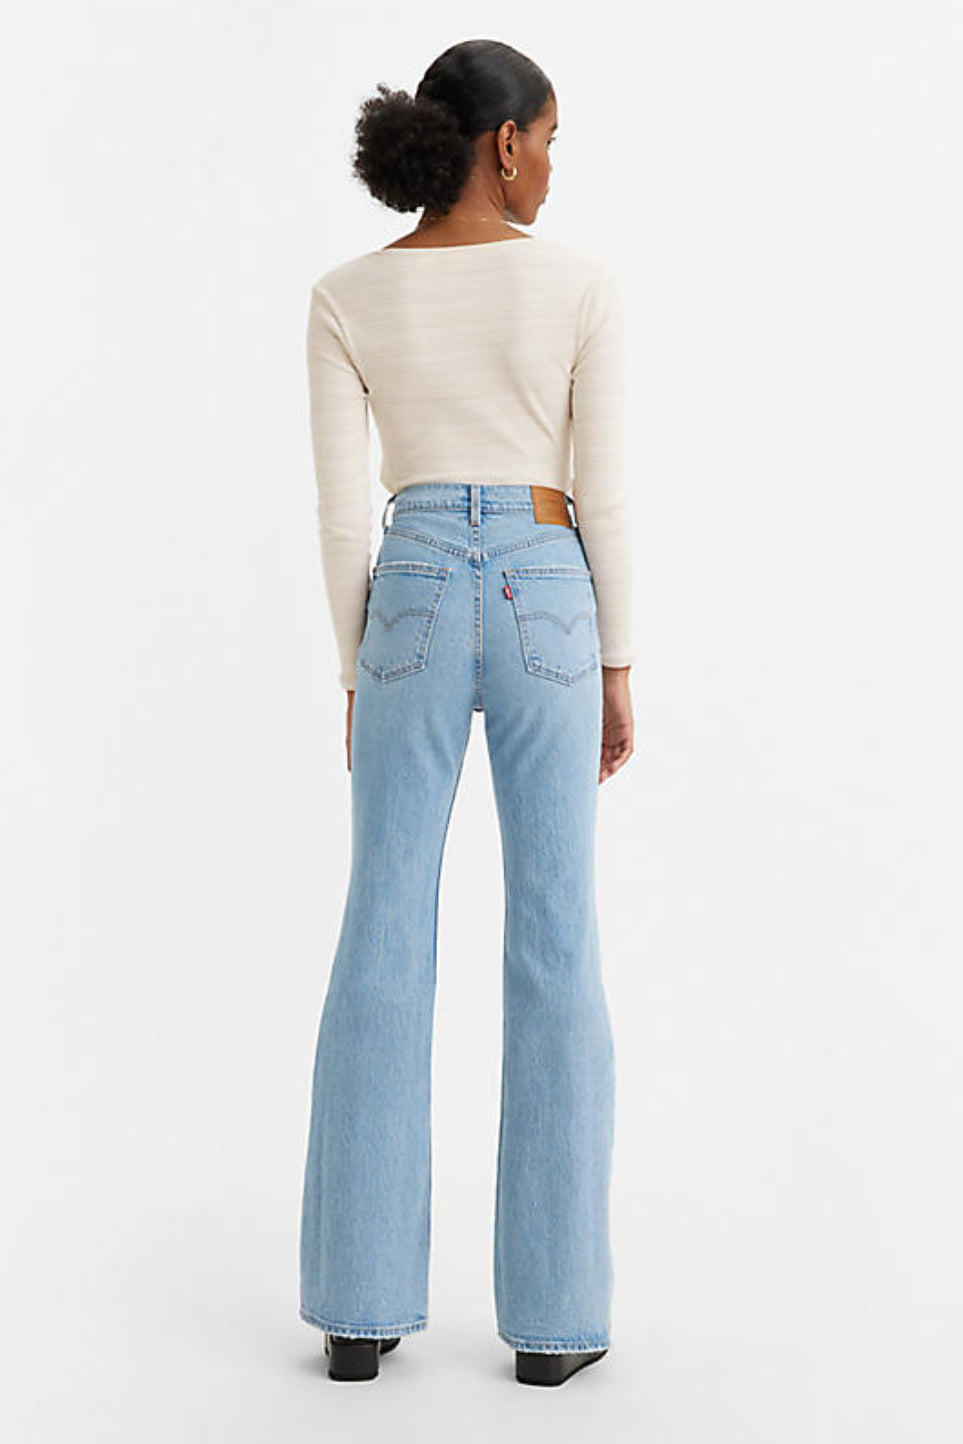 Monet Hysterisch Absorberend Levi's 70's High Flare Women's Jeans - Maude